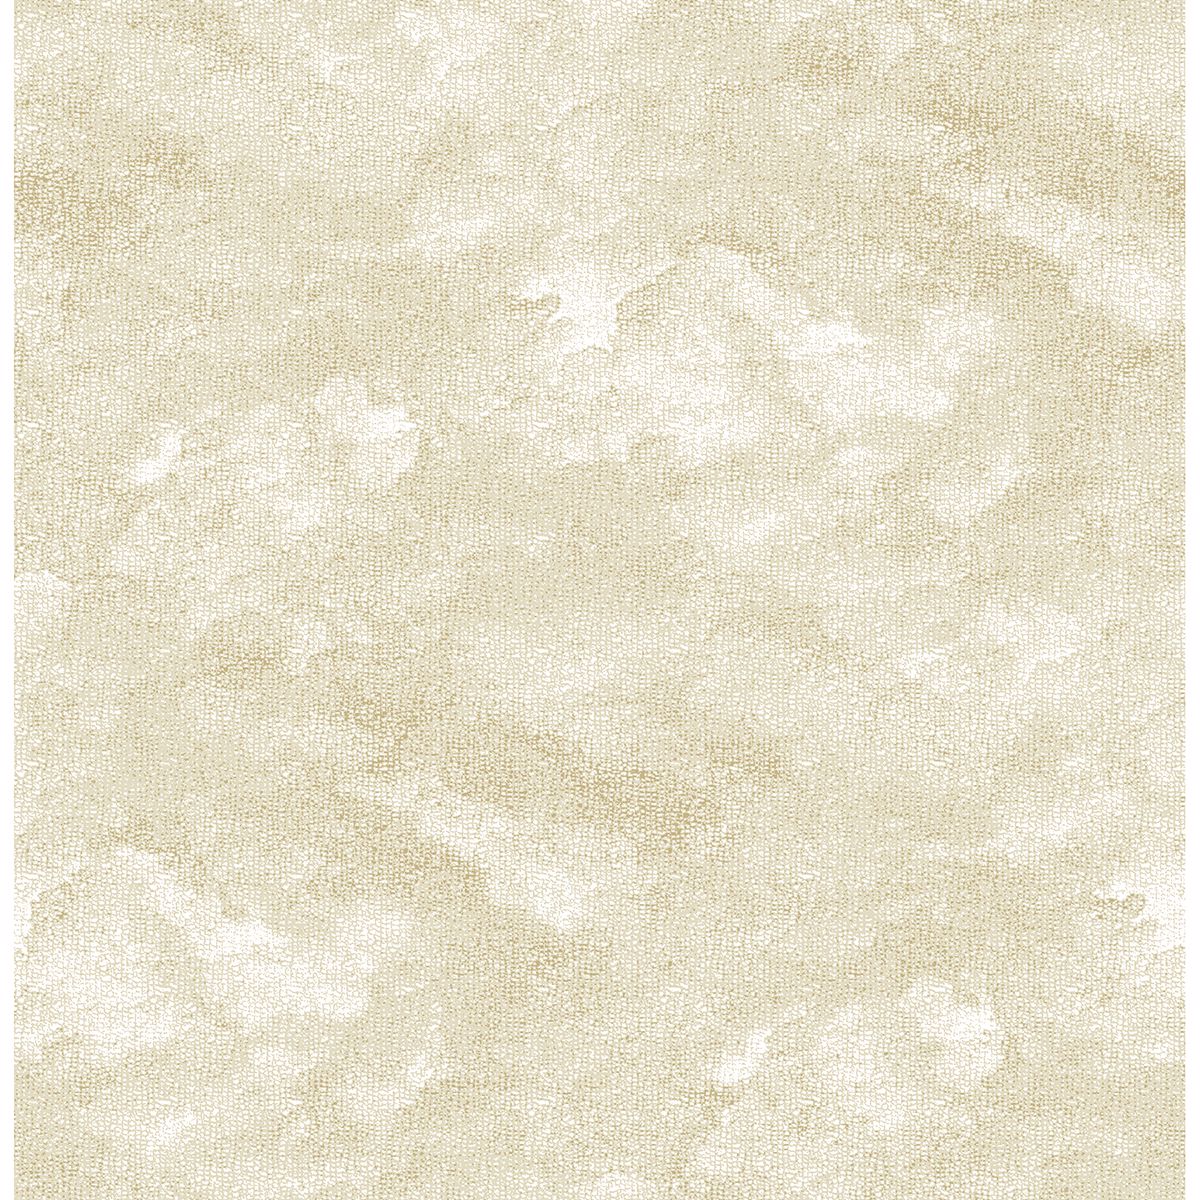 2861-25712 - Bode Beige Cloud Wallpaper - by A-Street Prints